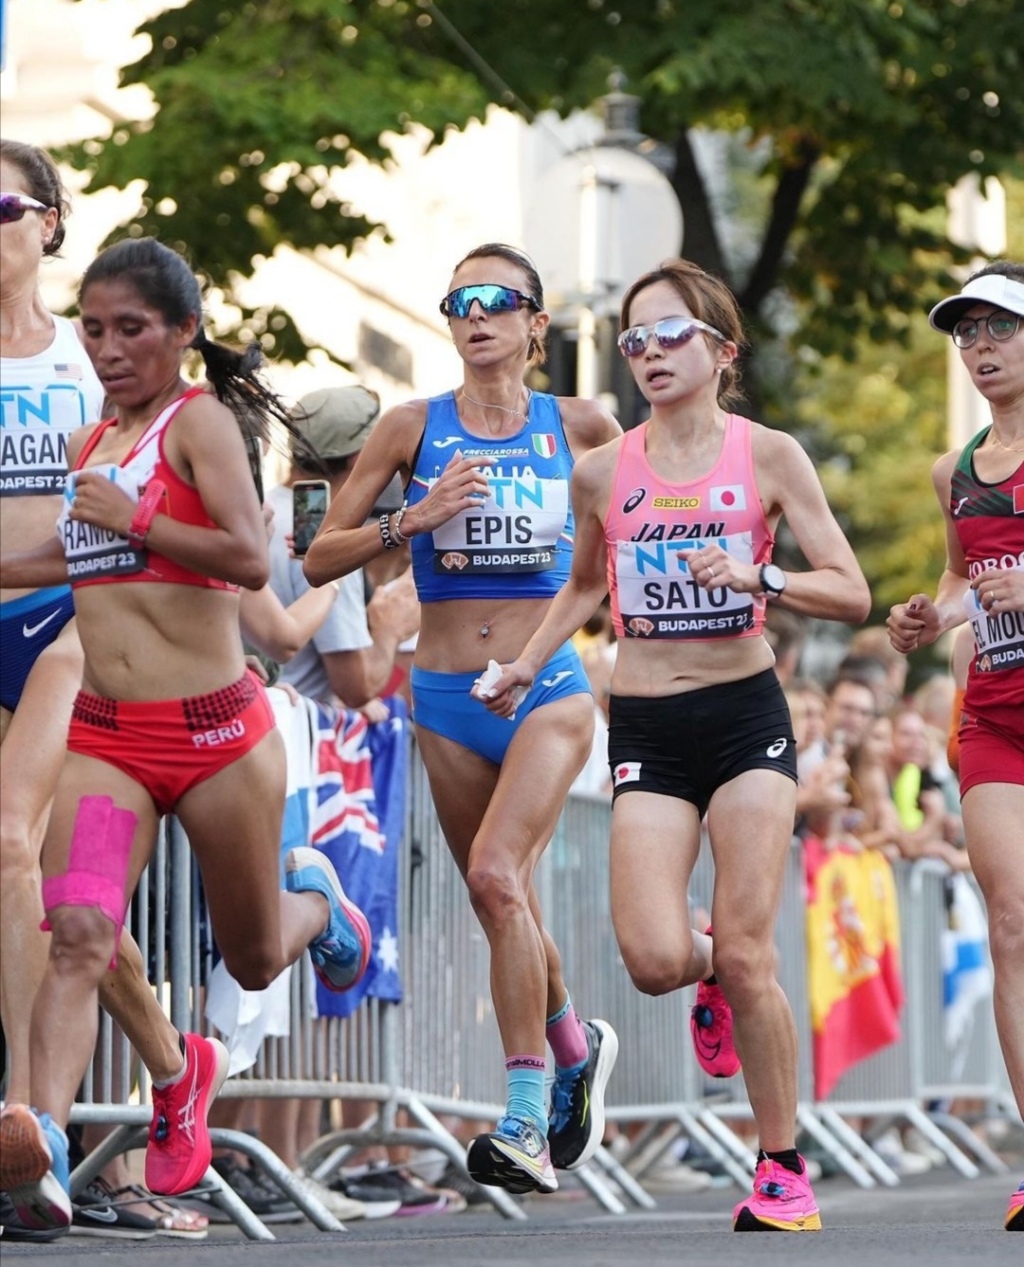 Mondiali di atletica – Day 8, sessione diurna: Giovanna Epis vicina alla top 10 nella maratona!